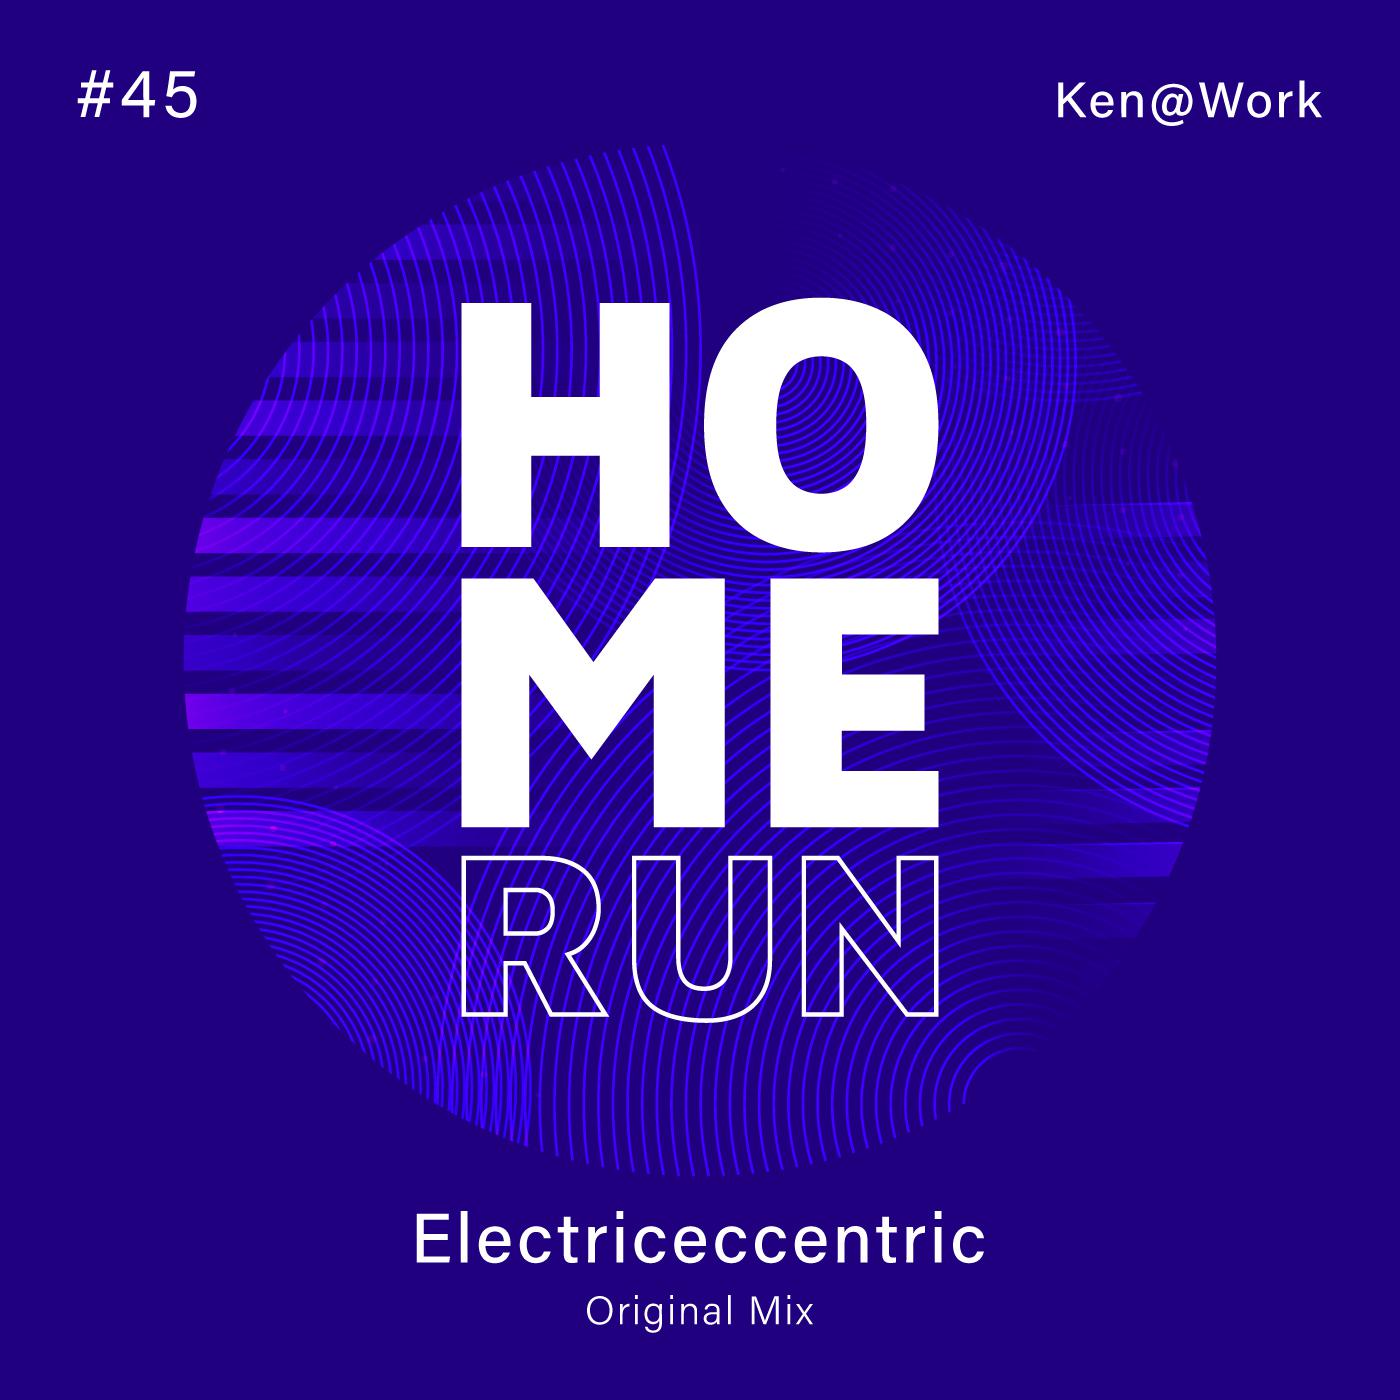 Ken@Work - Electriceccentric